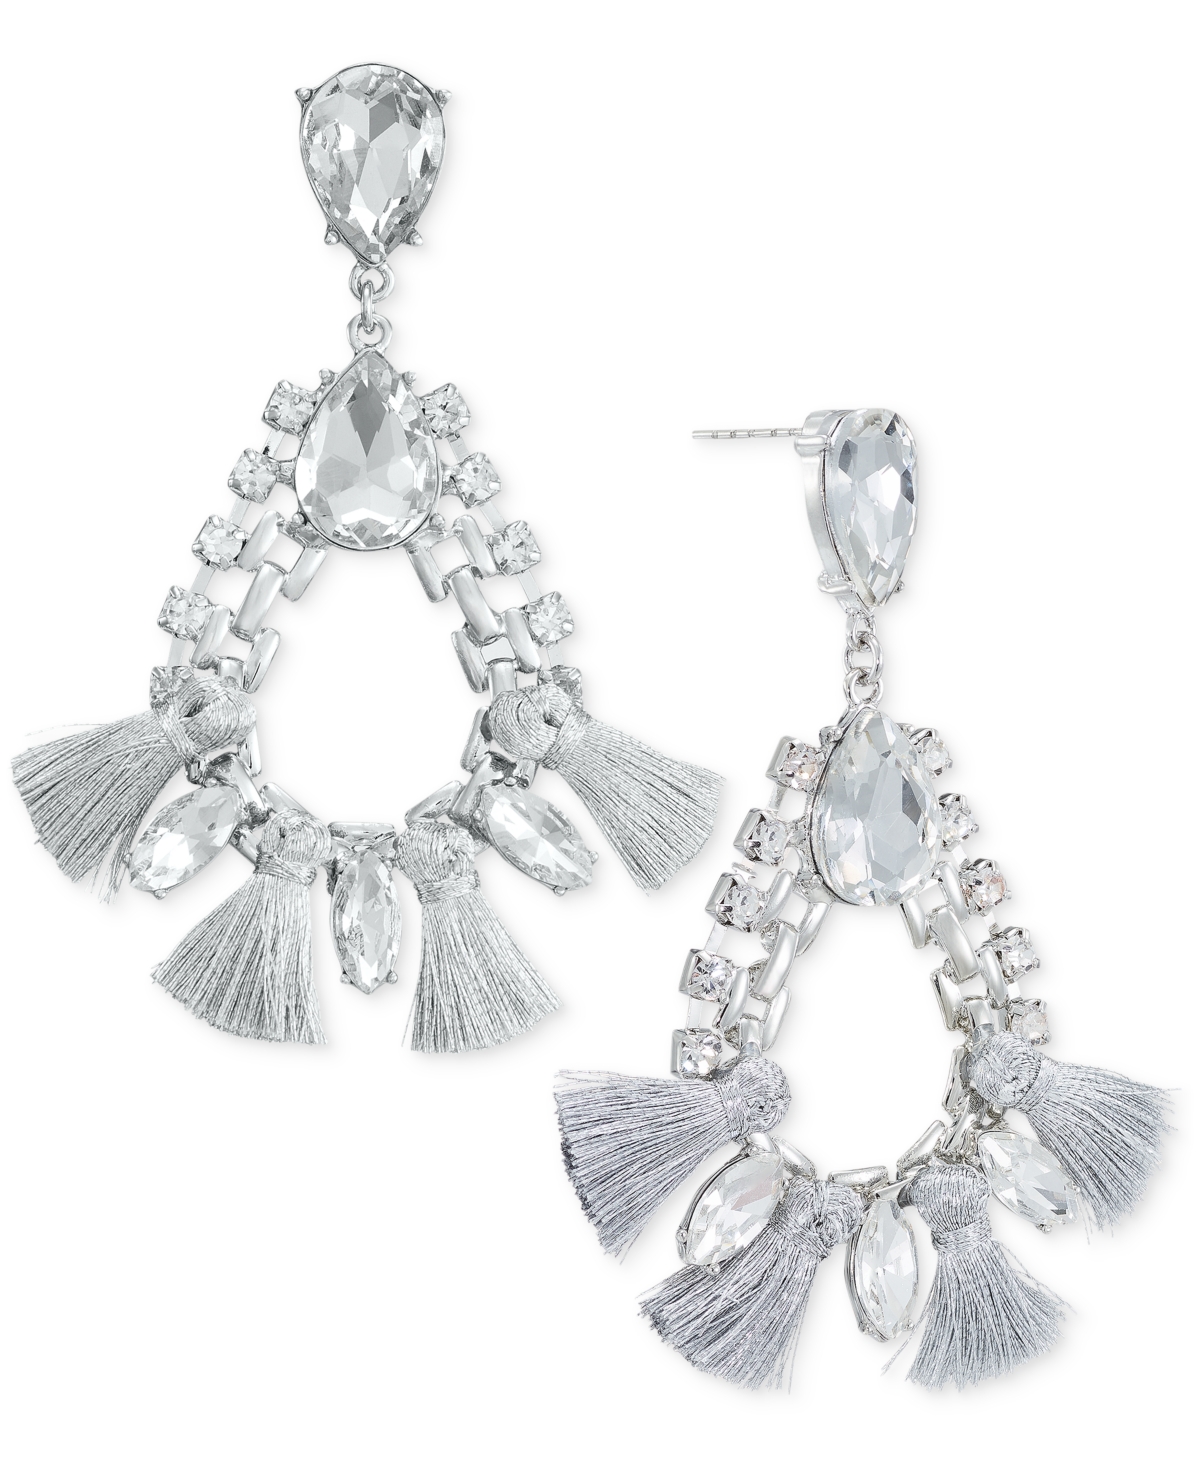 Crystal & Tassel Open Drop Earrings, Created for Macy's - Silver